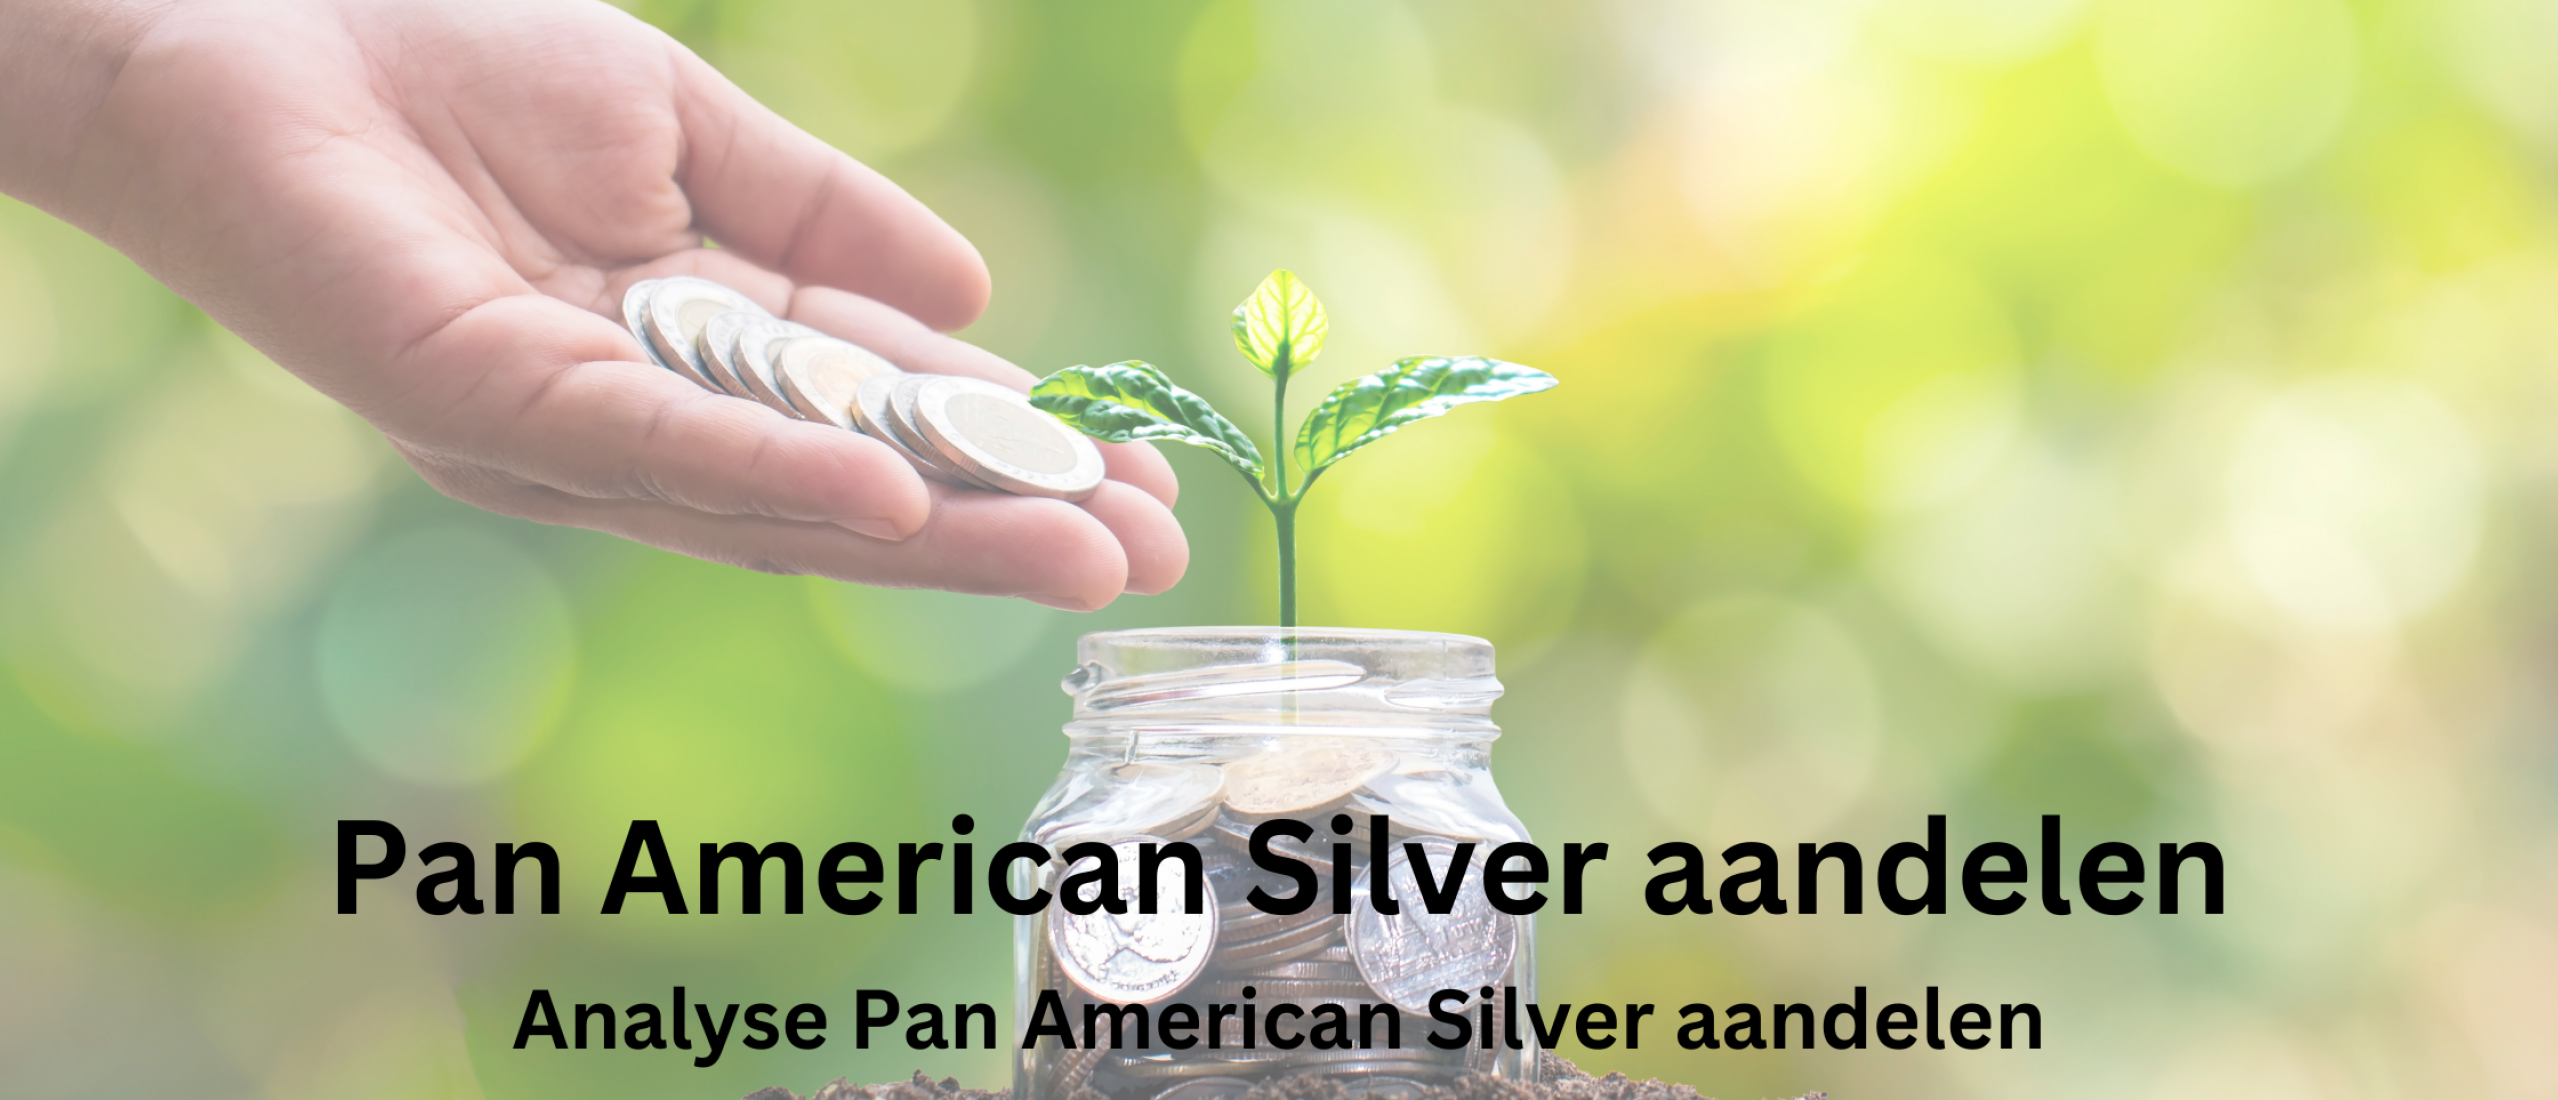 pan-american-silver-aandelen-kopen